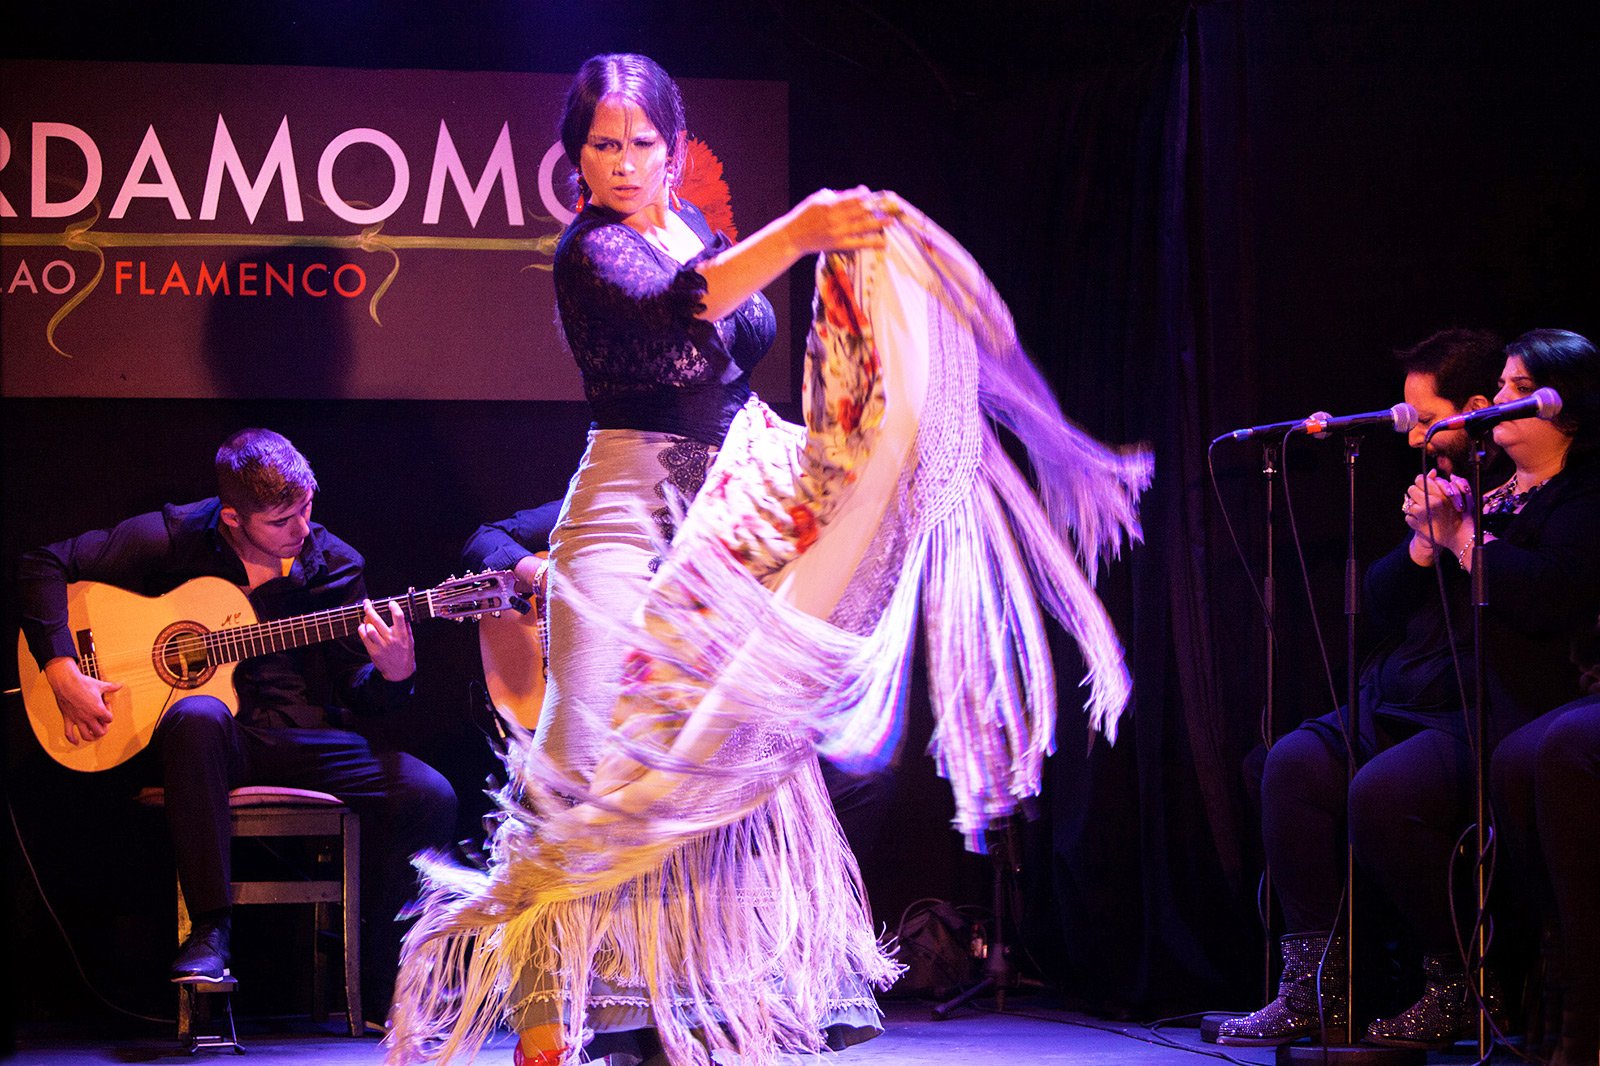 Как увидеть фламенко в таблао в Мадриде